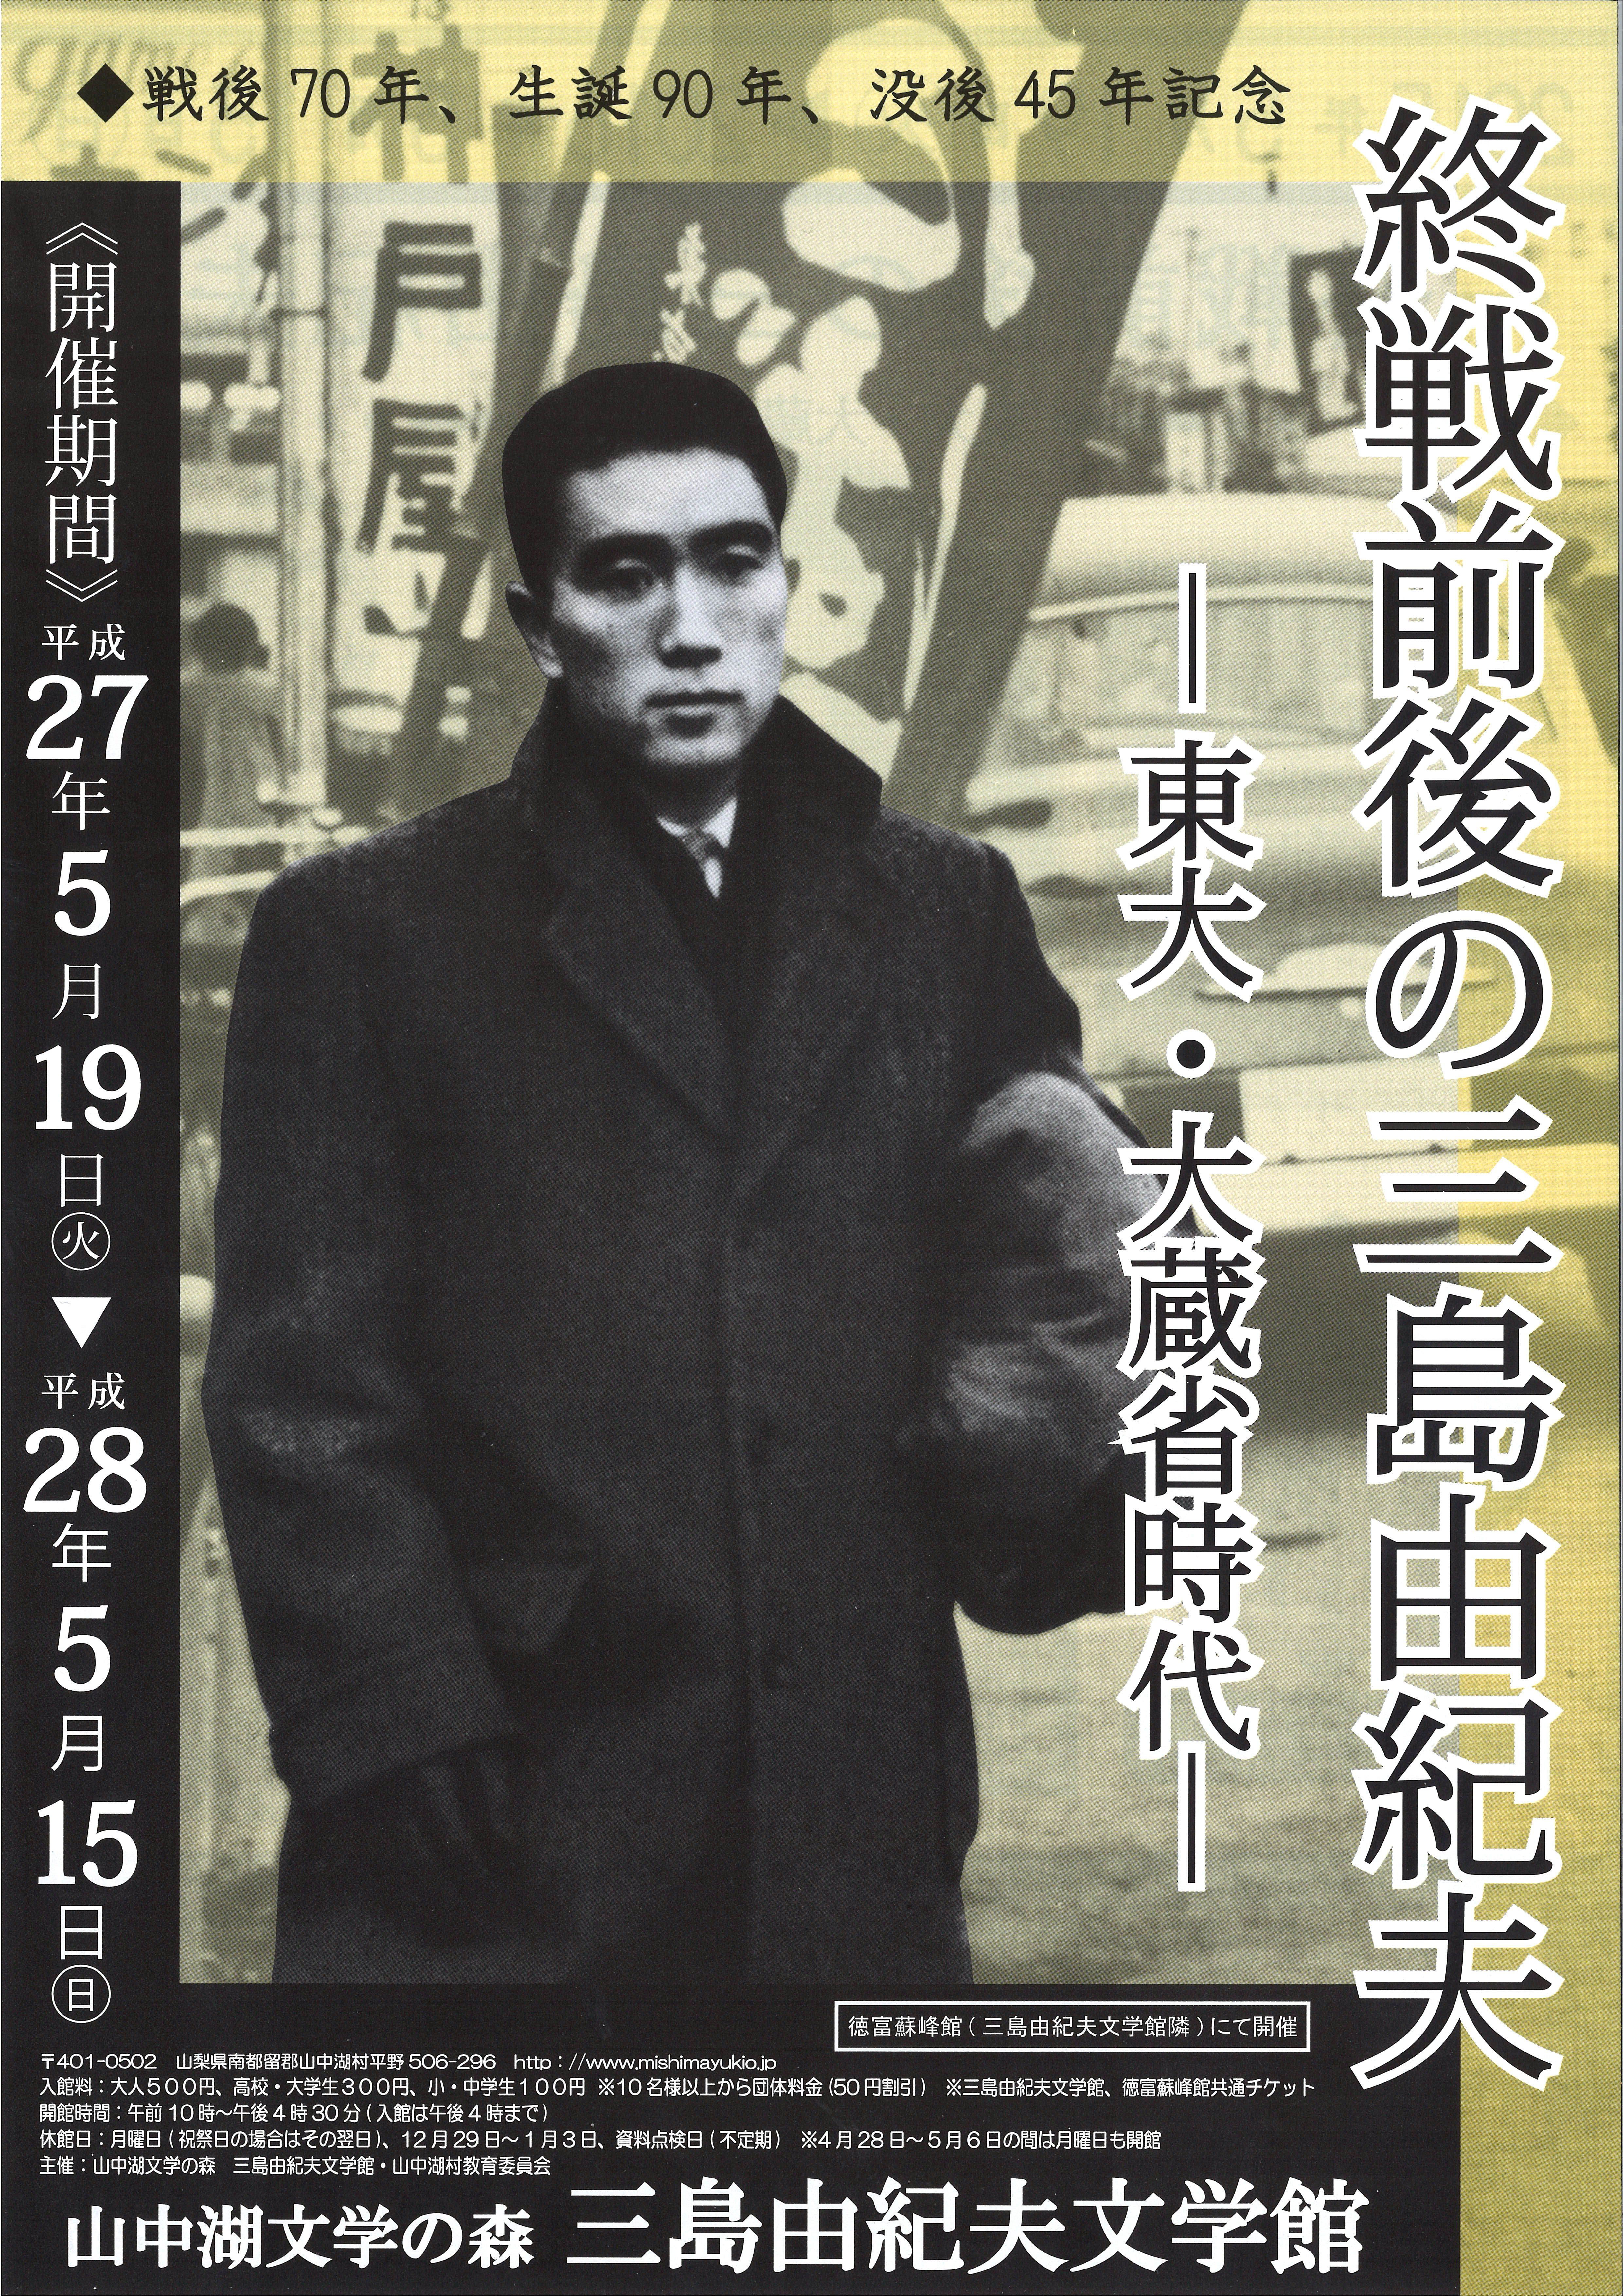 戦後70年、生誕90年、没後45年記念企画展「終戦前後の三島由紀夫―東大・大蔵省時代―」